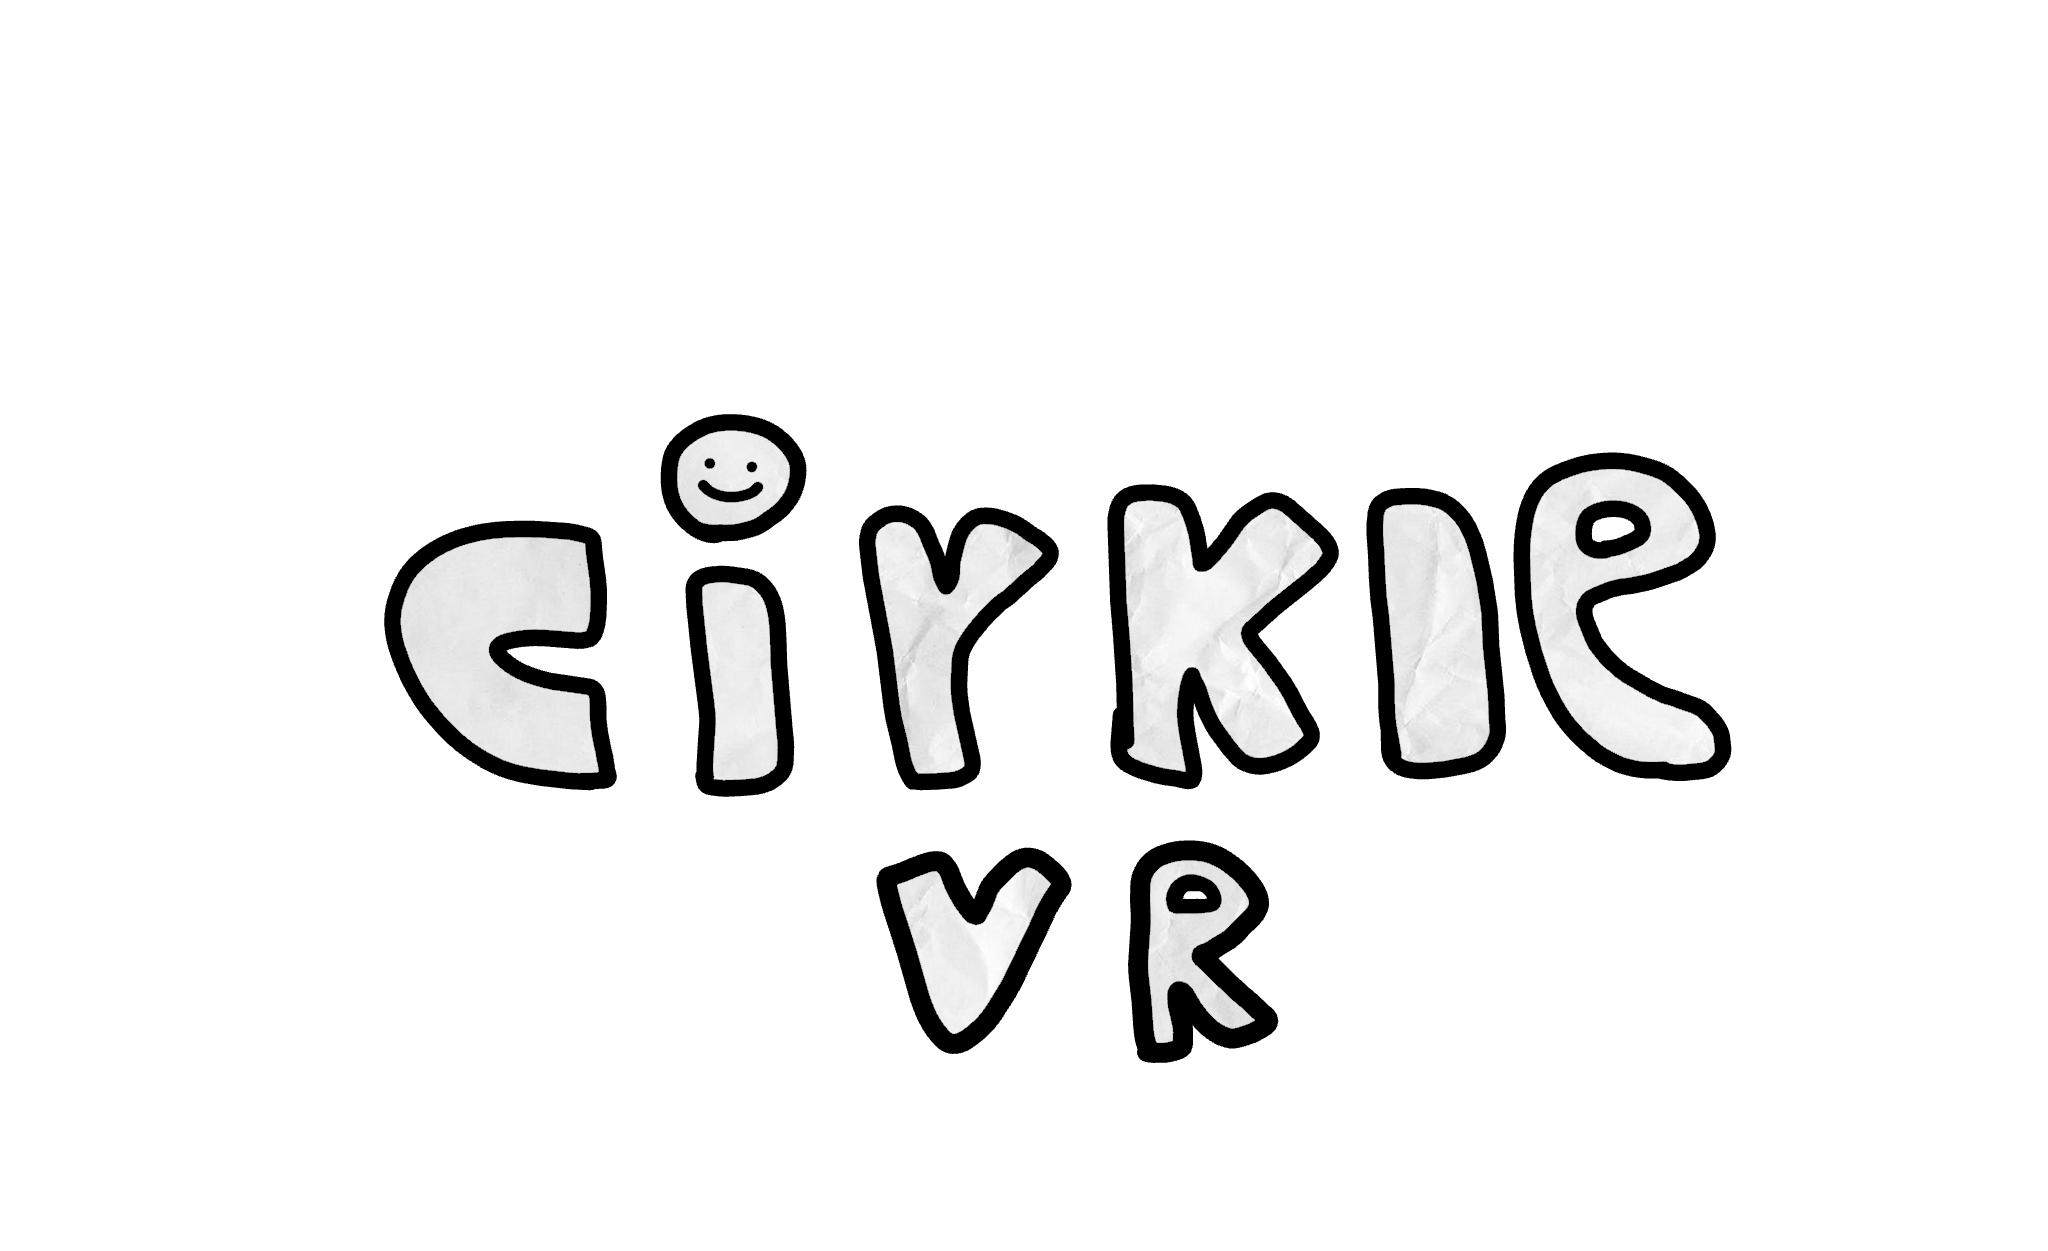 CIRKLE VR